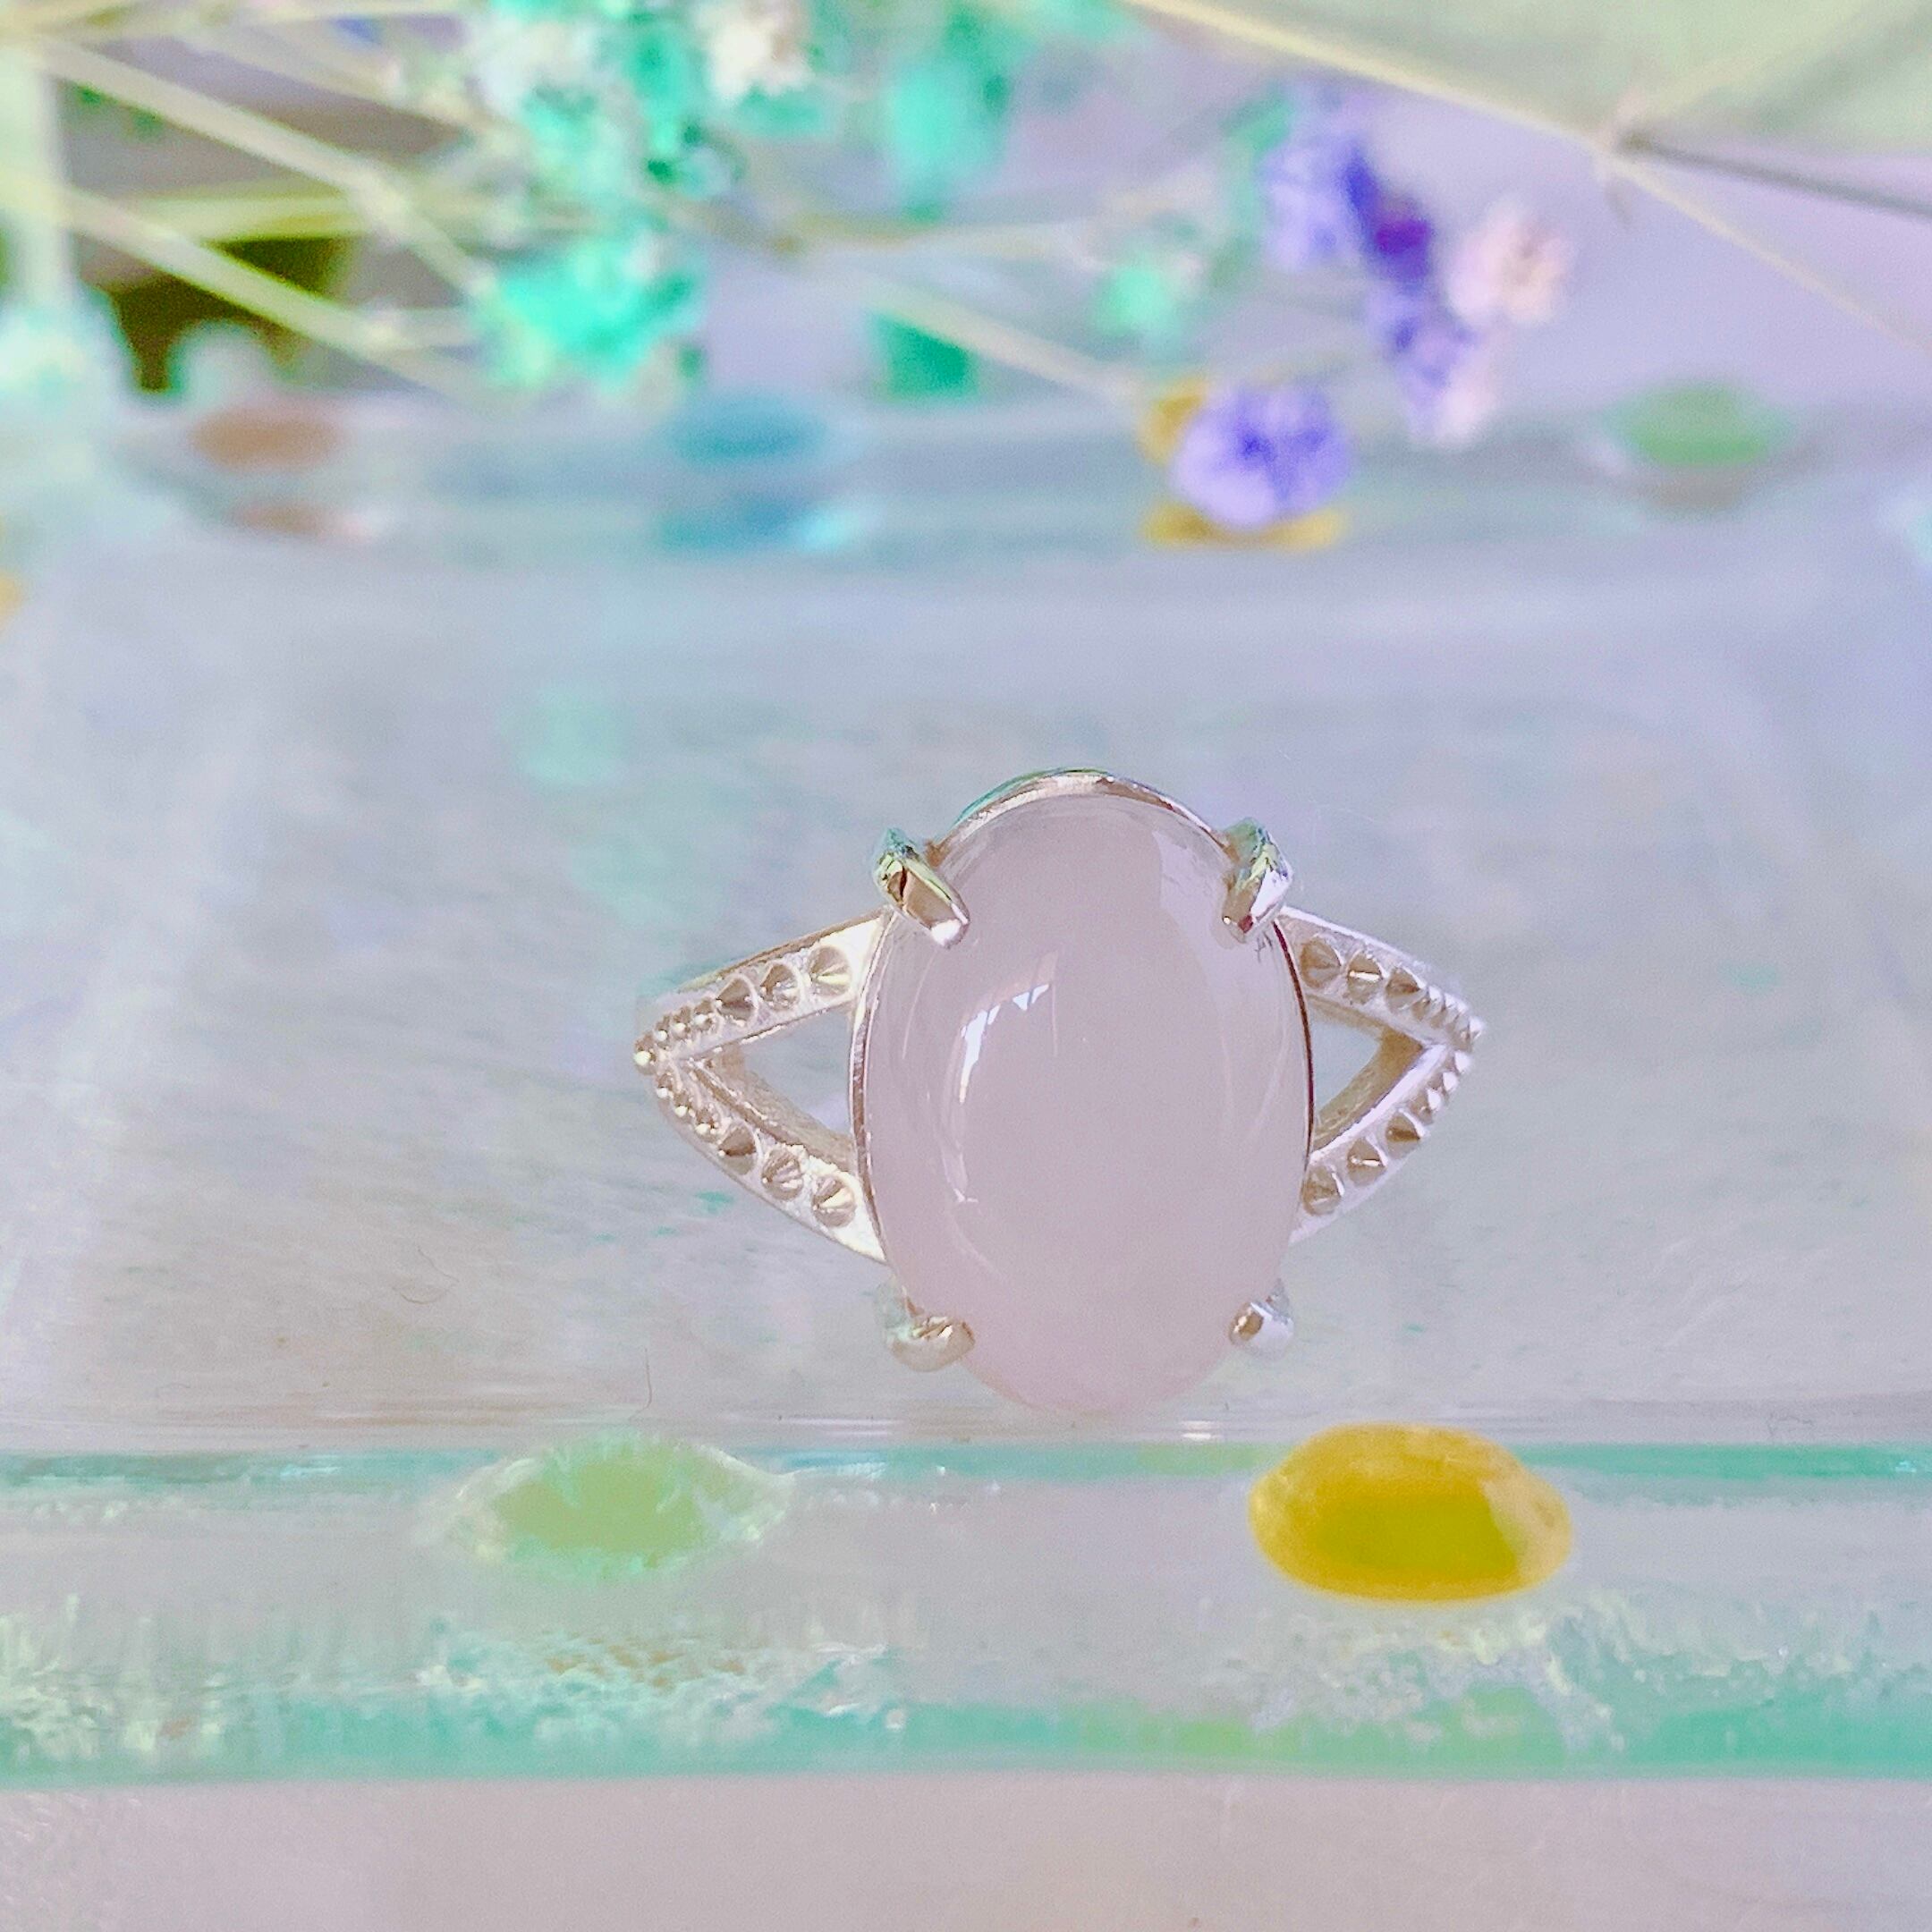 rose quartz ring / silver ローズクォーツshushujojo